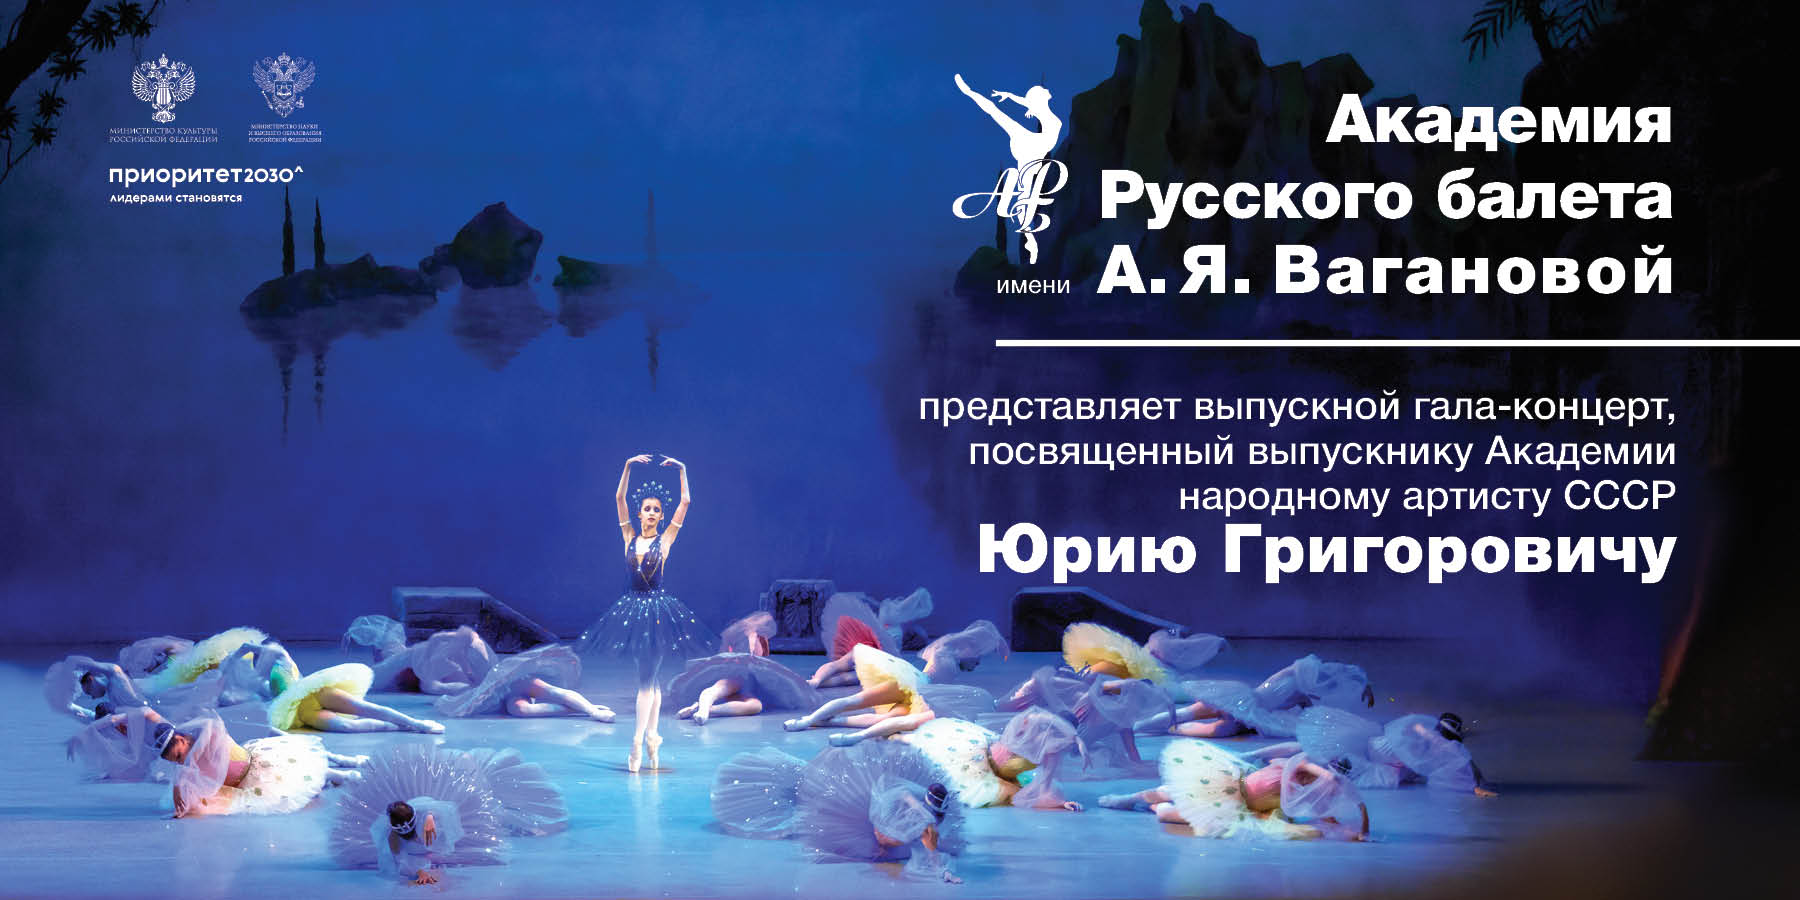 Академия Русского балета имени А.Я. Вагановой. Выпускной гала-концерт